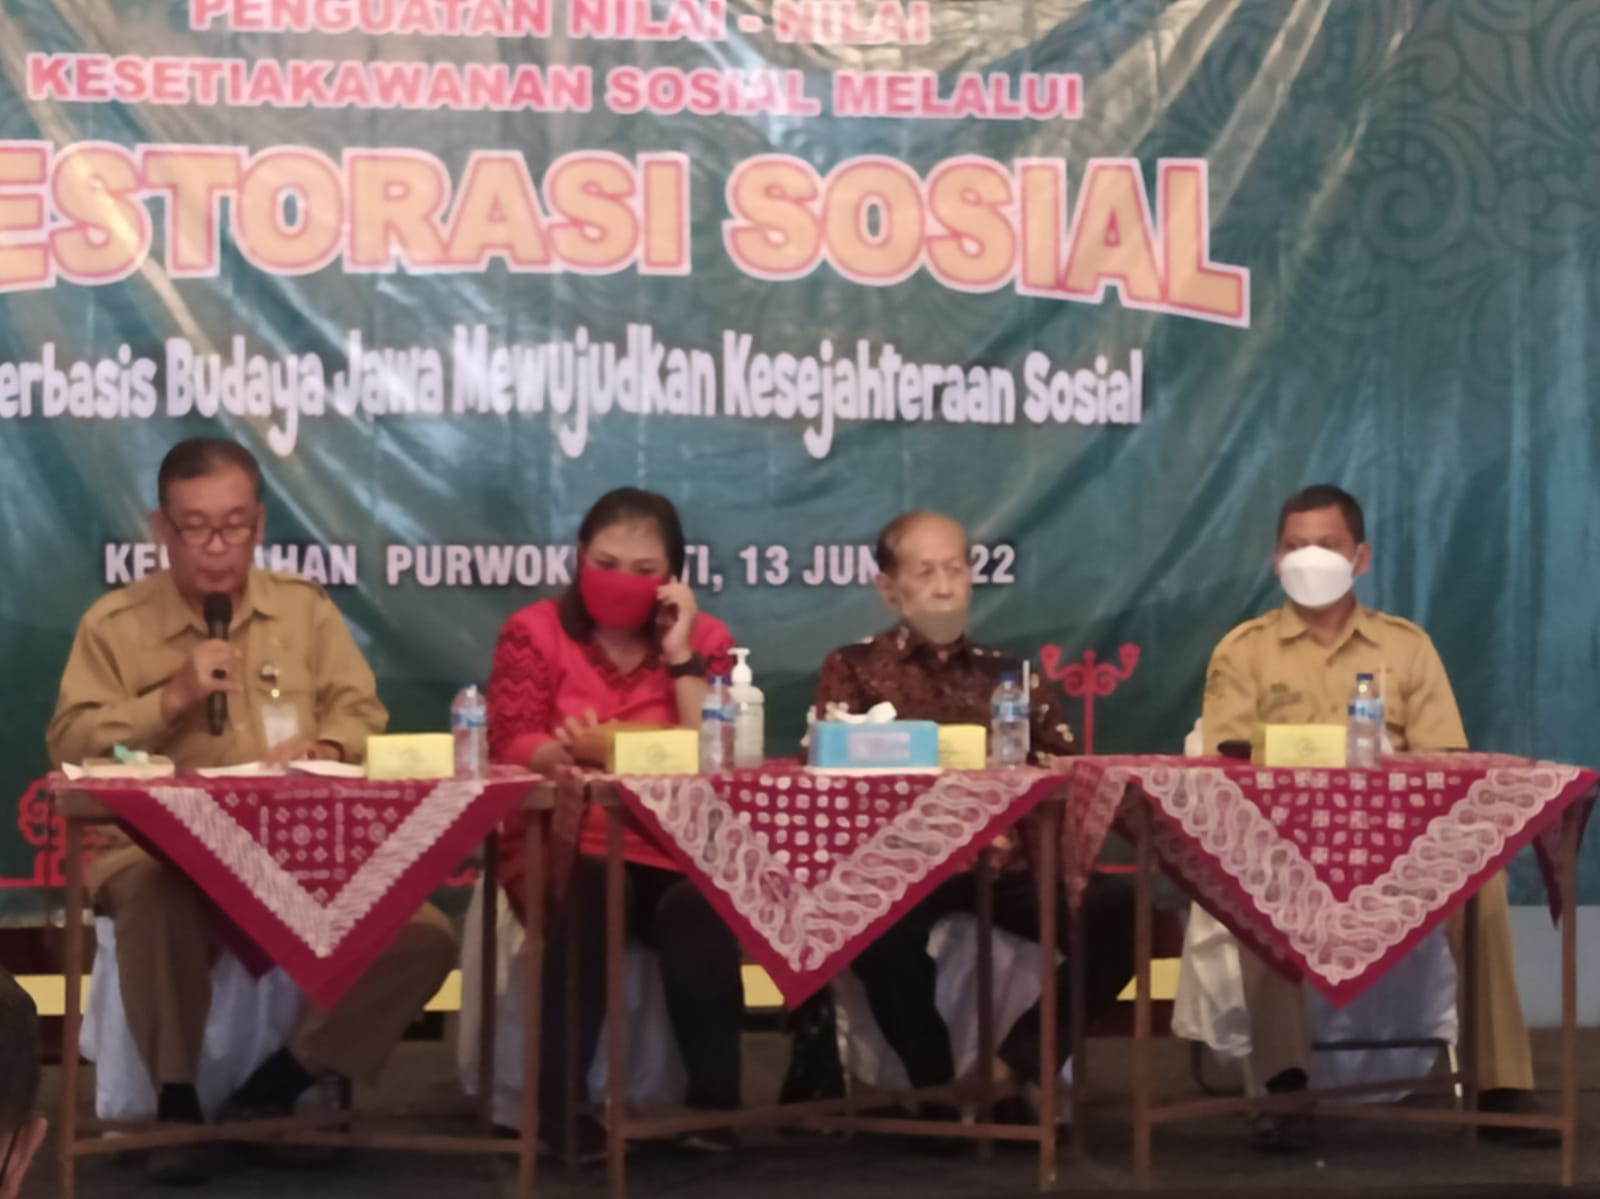 Restorasi Sosial Berbasis Budaya Jawa